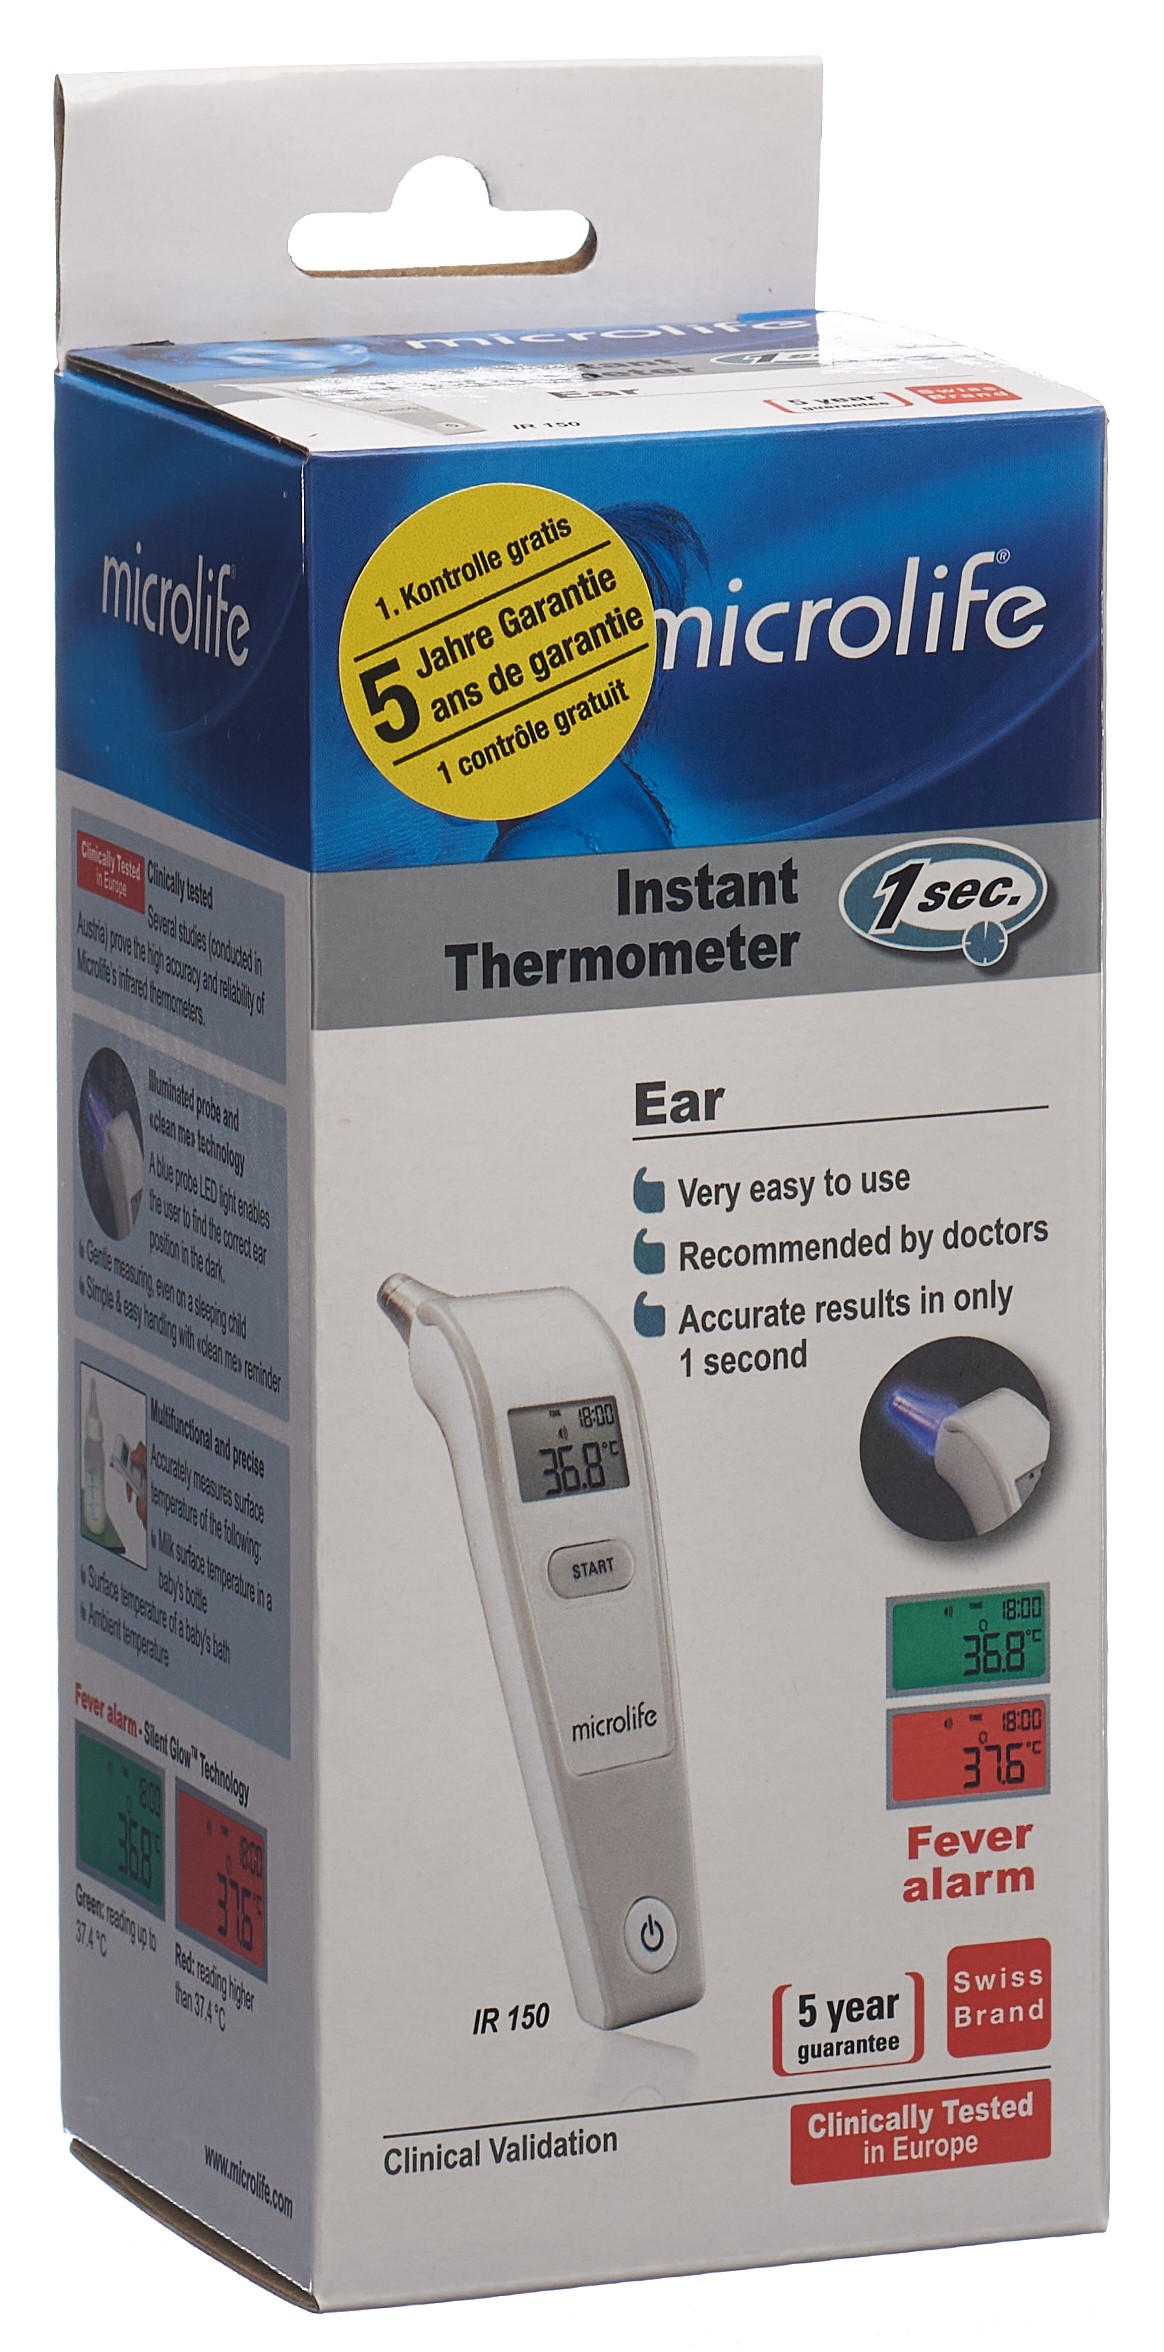 Dr. Apotheken Fieberthermometer Noyer - Shop Online -